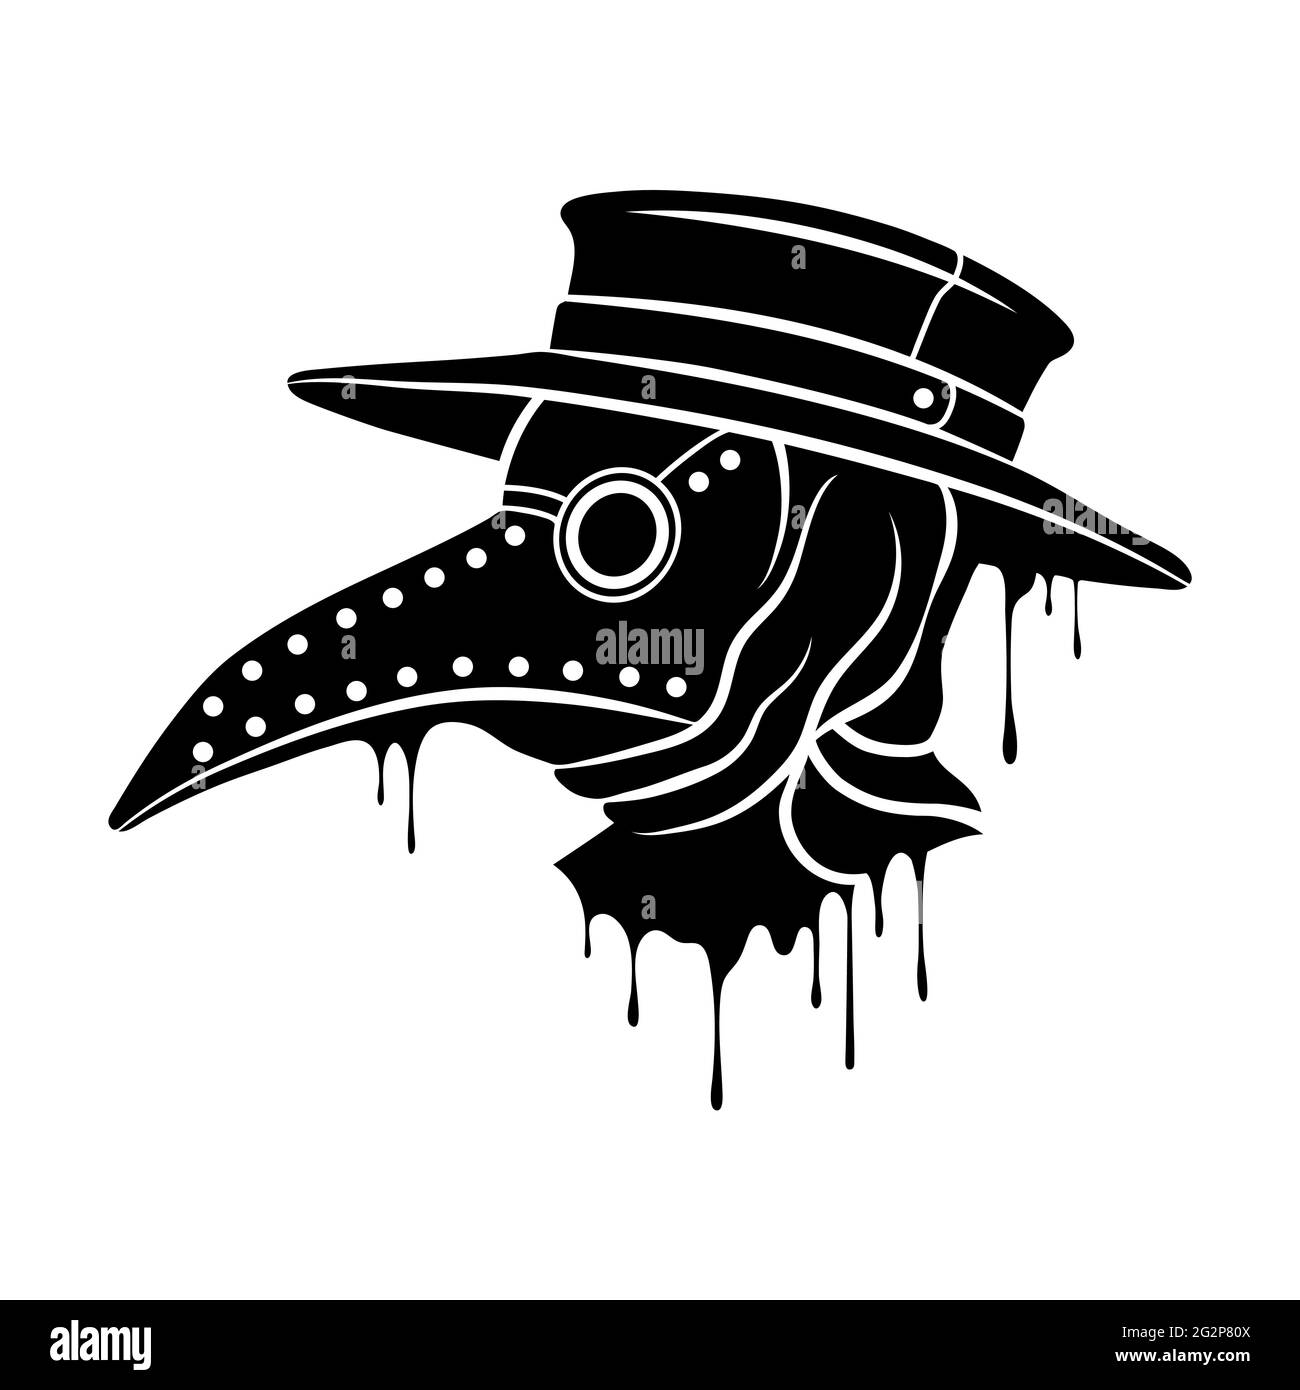 Ilustración de la máscara de la peste del doctor.